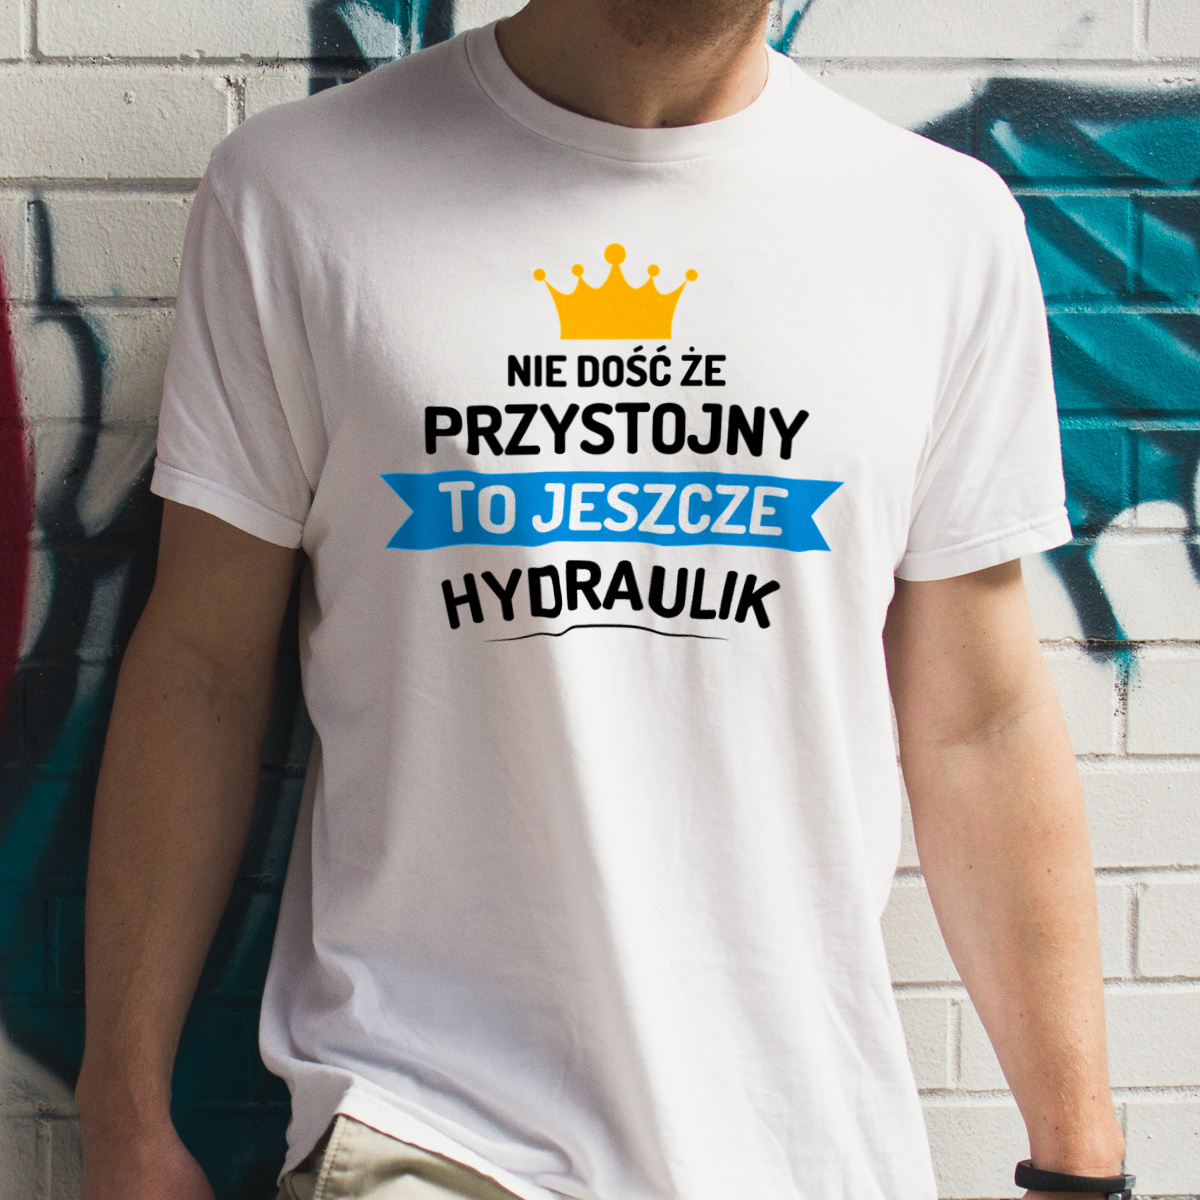 Przystojny Hydraulik - Męska Koszulka Biała